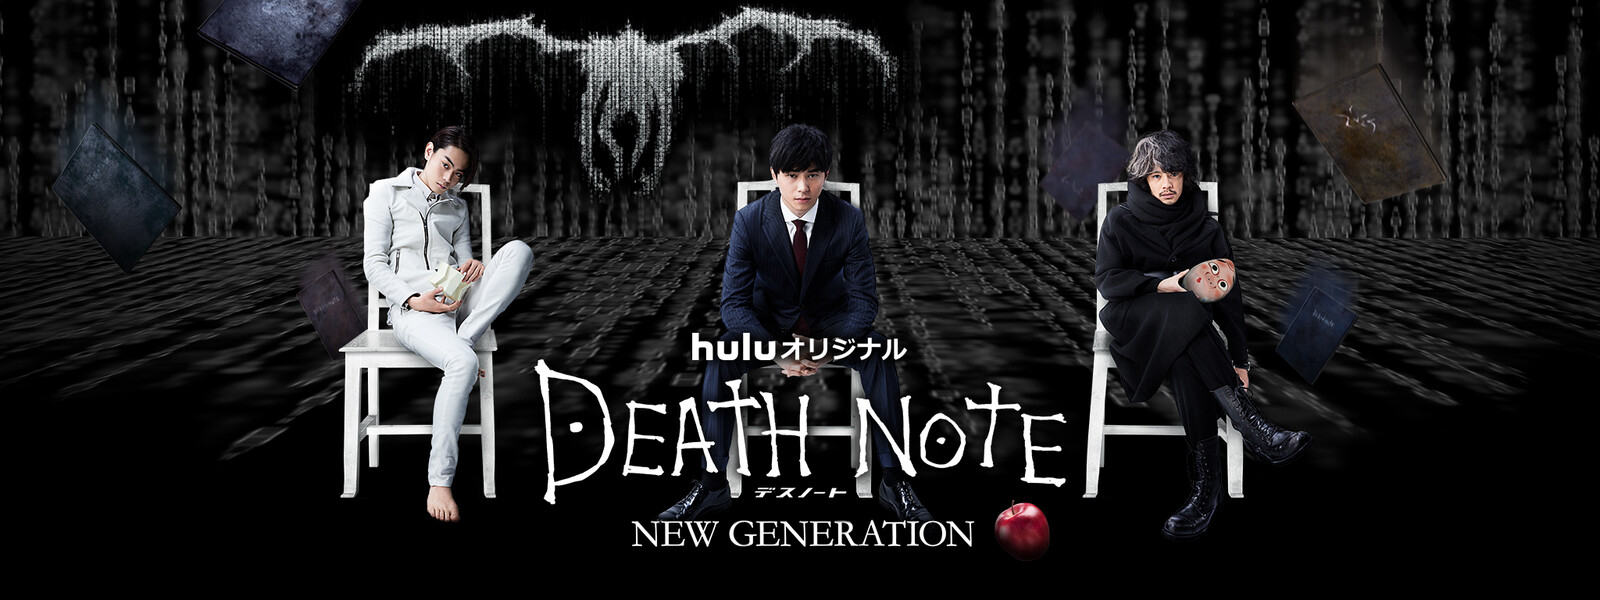 DEATH NOTE デスノート NEW GENERATIONの動画 - ミュージカル DEATH NOTE デスノート [告知]